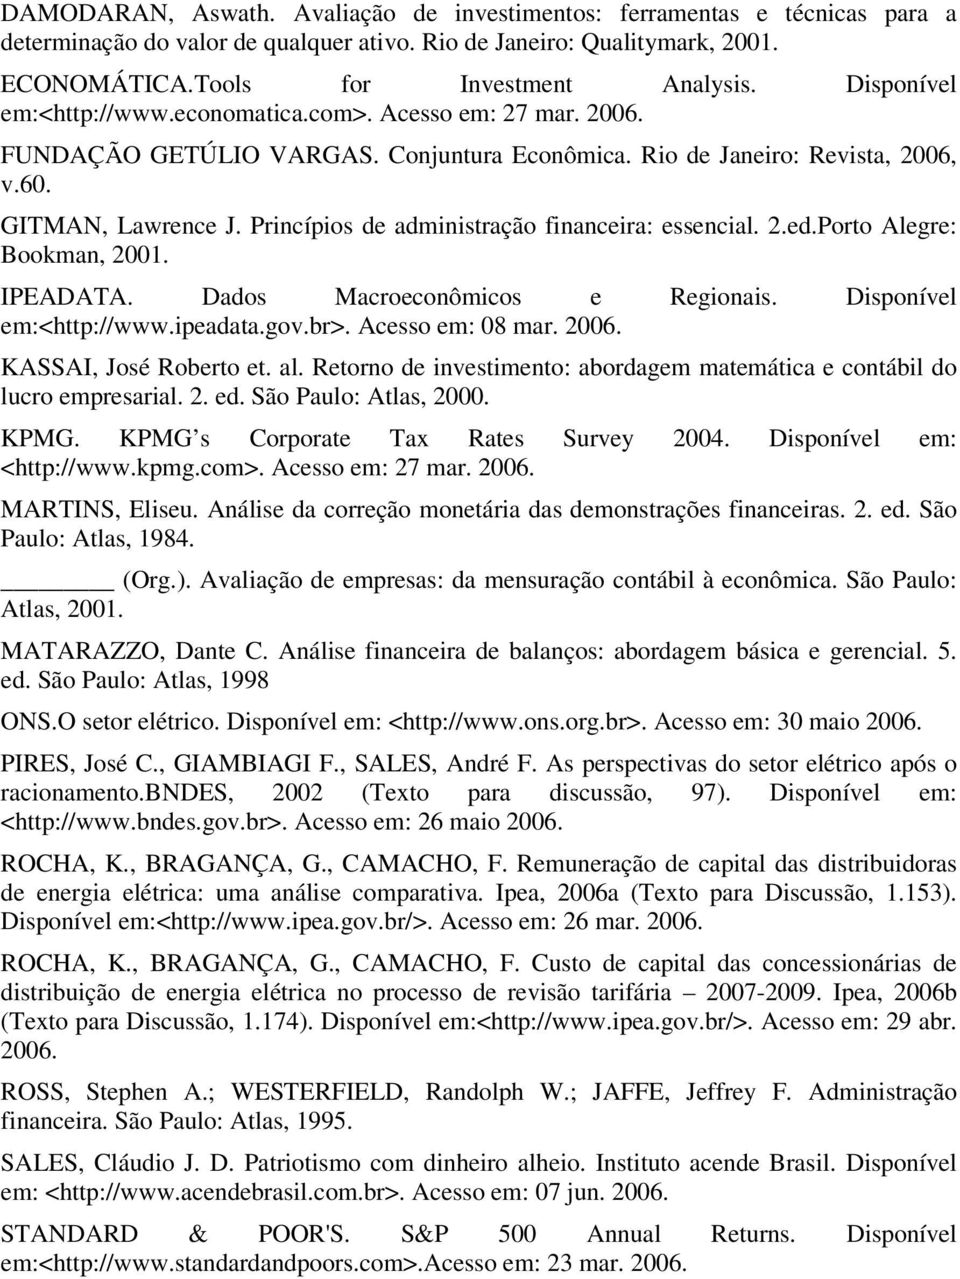 Princípios de administração financeira: essencial. 2.ed.Porto Alegre: Bookman, 2001. IPEADATA. Dados Macroeconômicos e Regionais. Disponível em:<http://www.ipeadata.gov.br>. Acesso em: 08 mar. 2006.